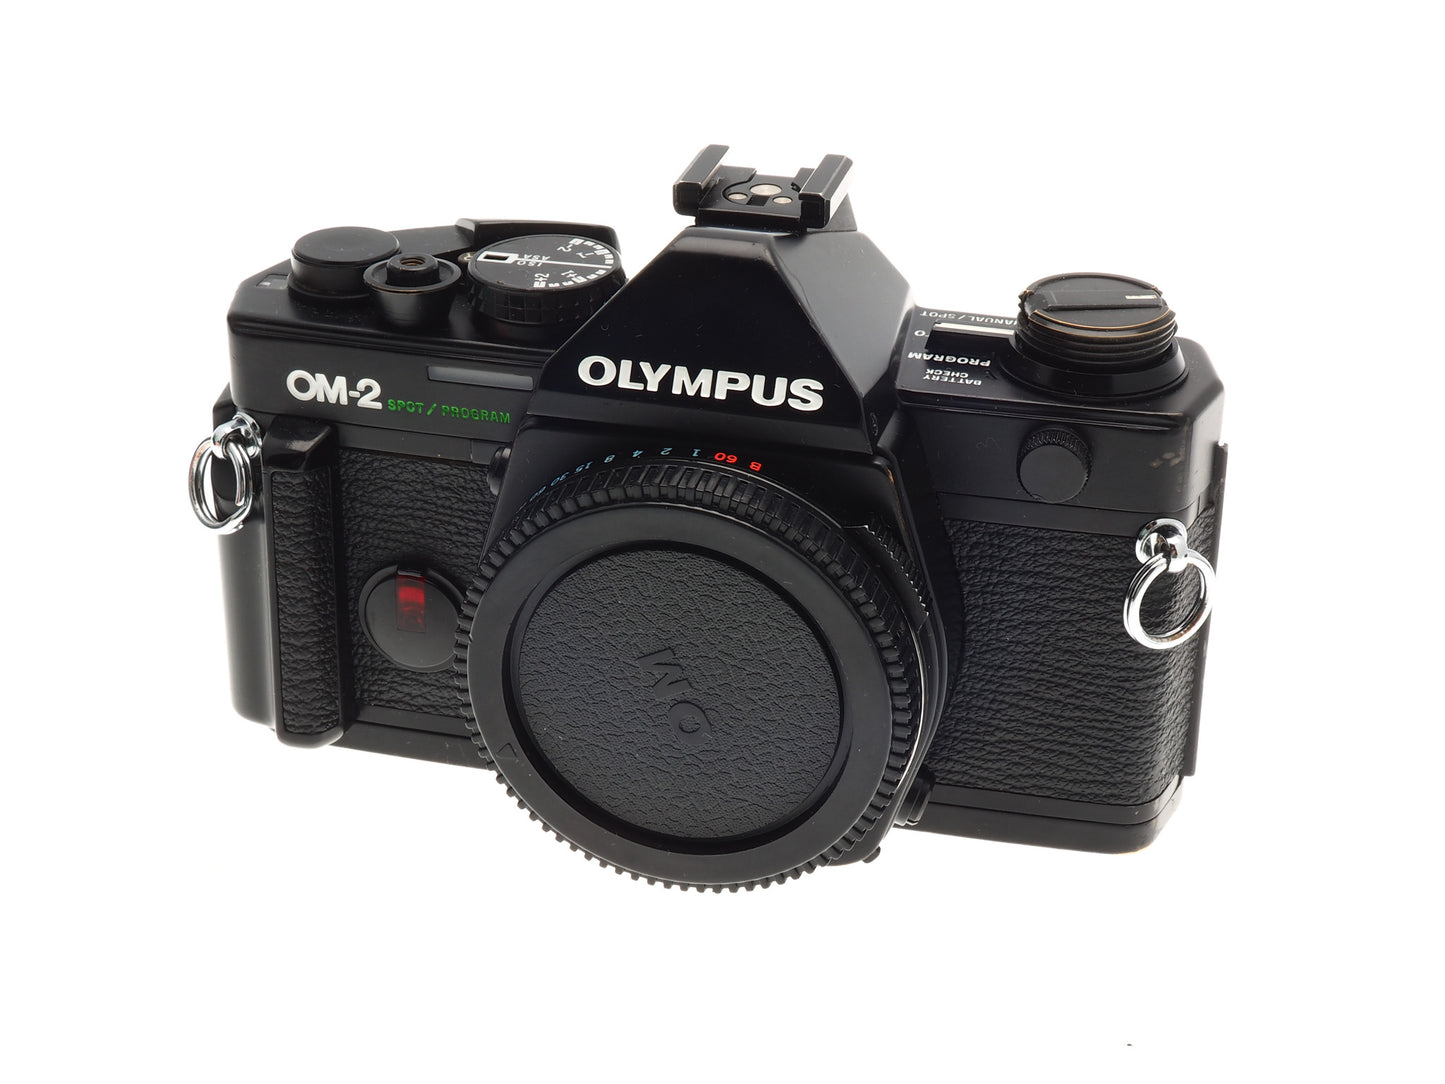 Olympus OM-2 Spot/Program